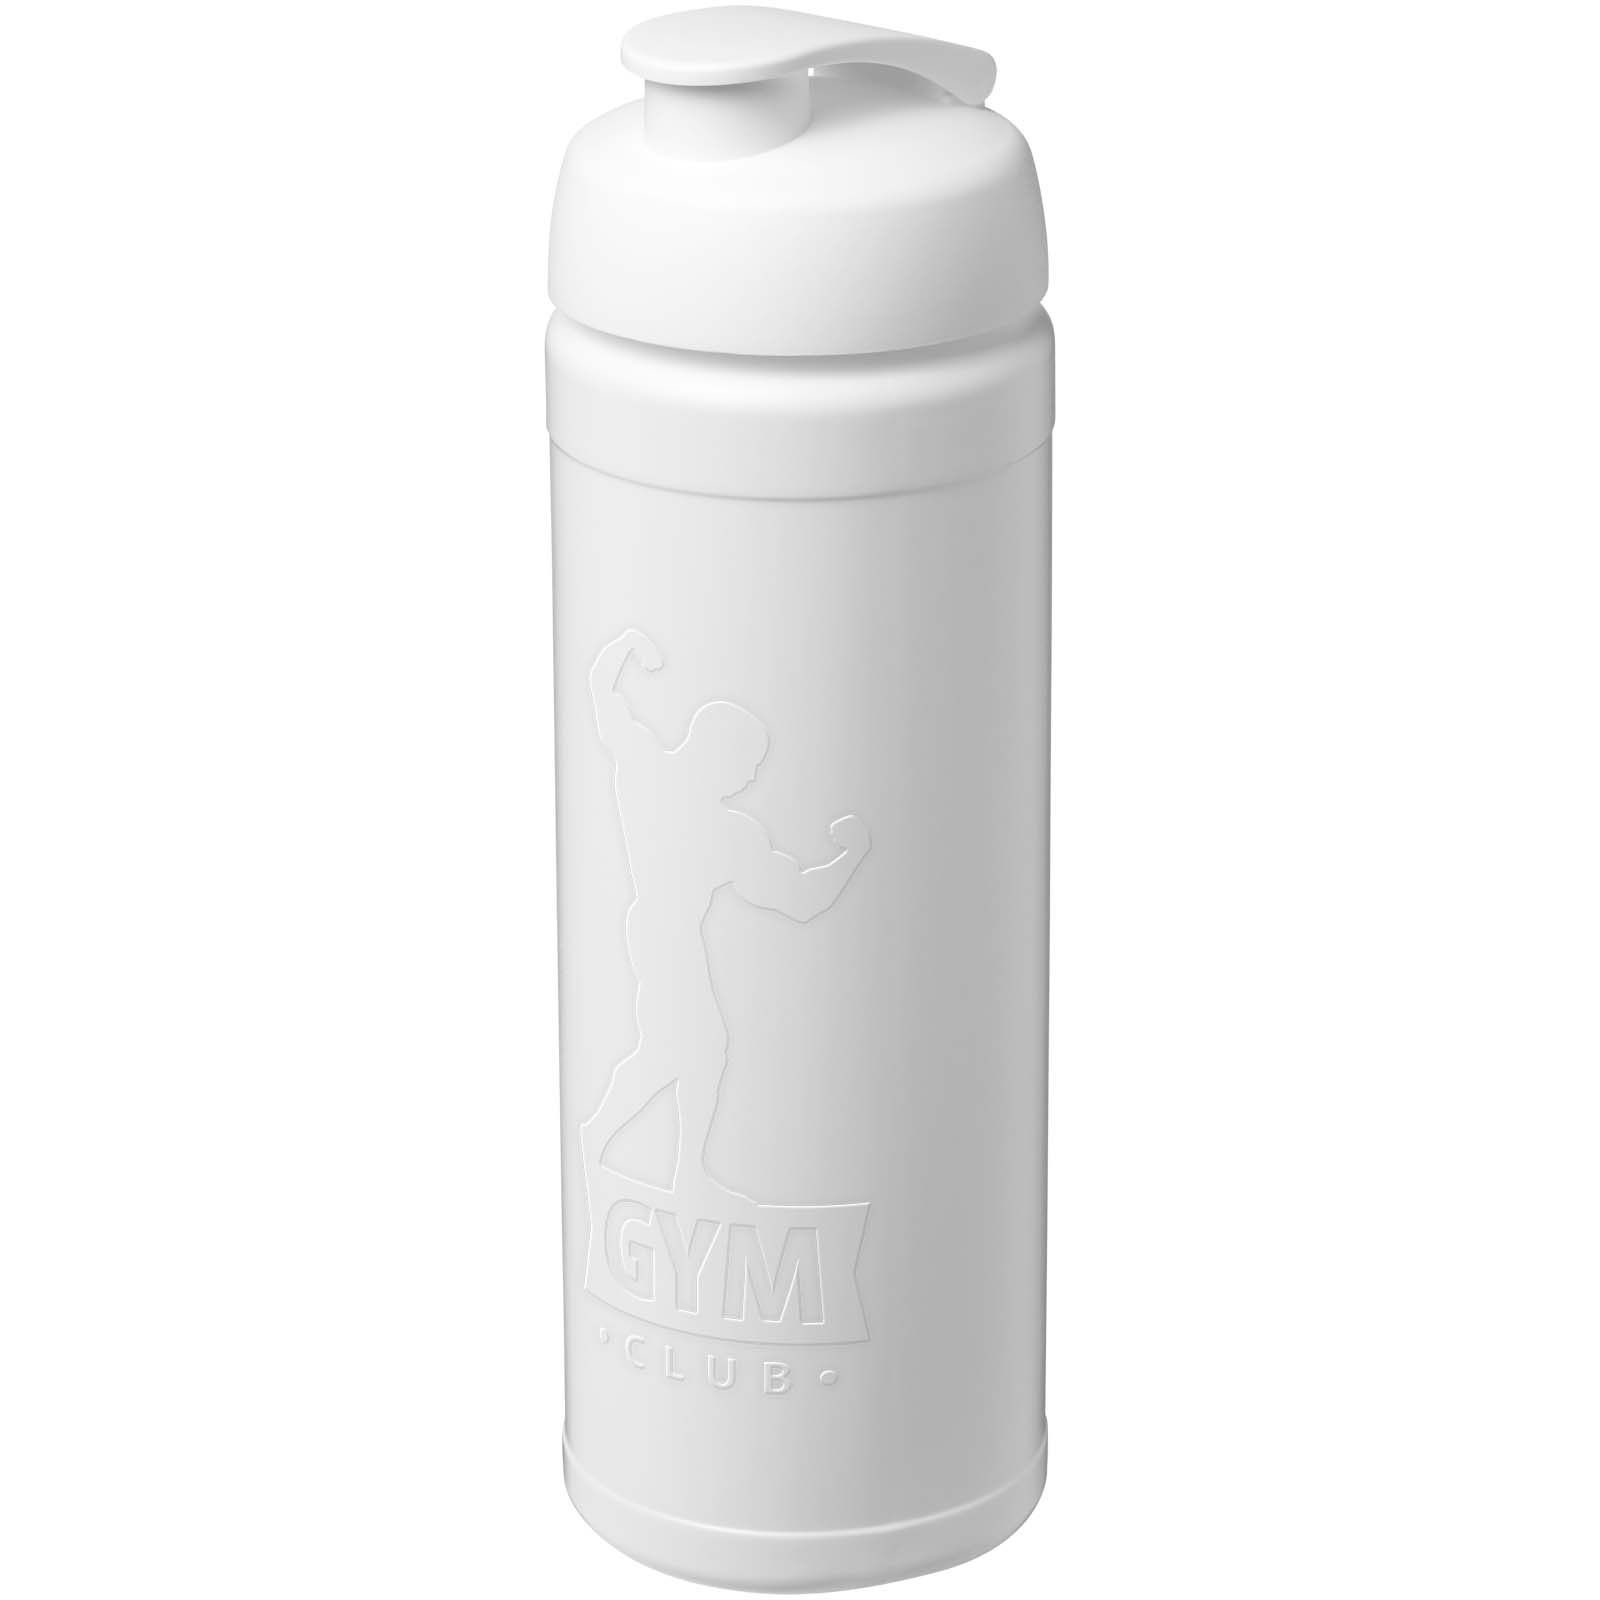 Drinkware - Baseline Rise 750 ml sport bottle with flip lid